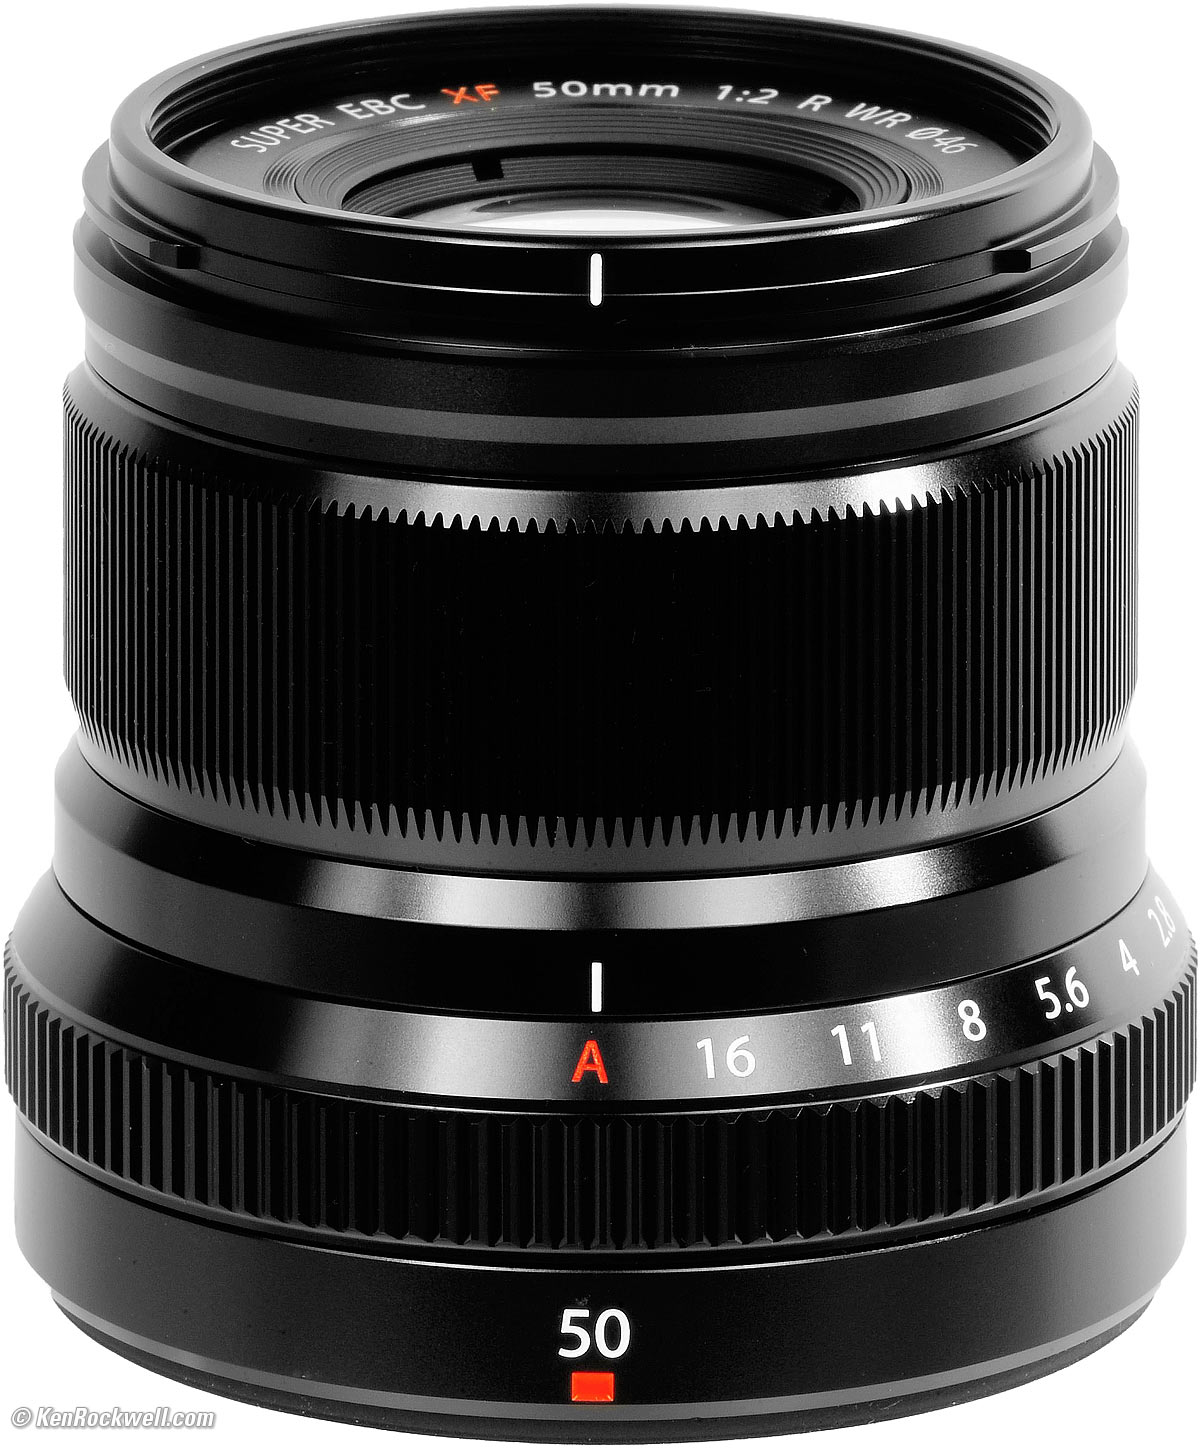 Fujifilm XF 50mm f/2 Review